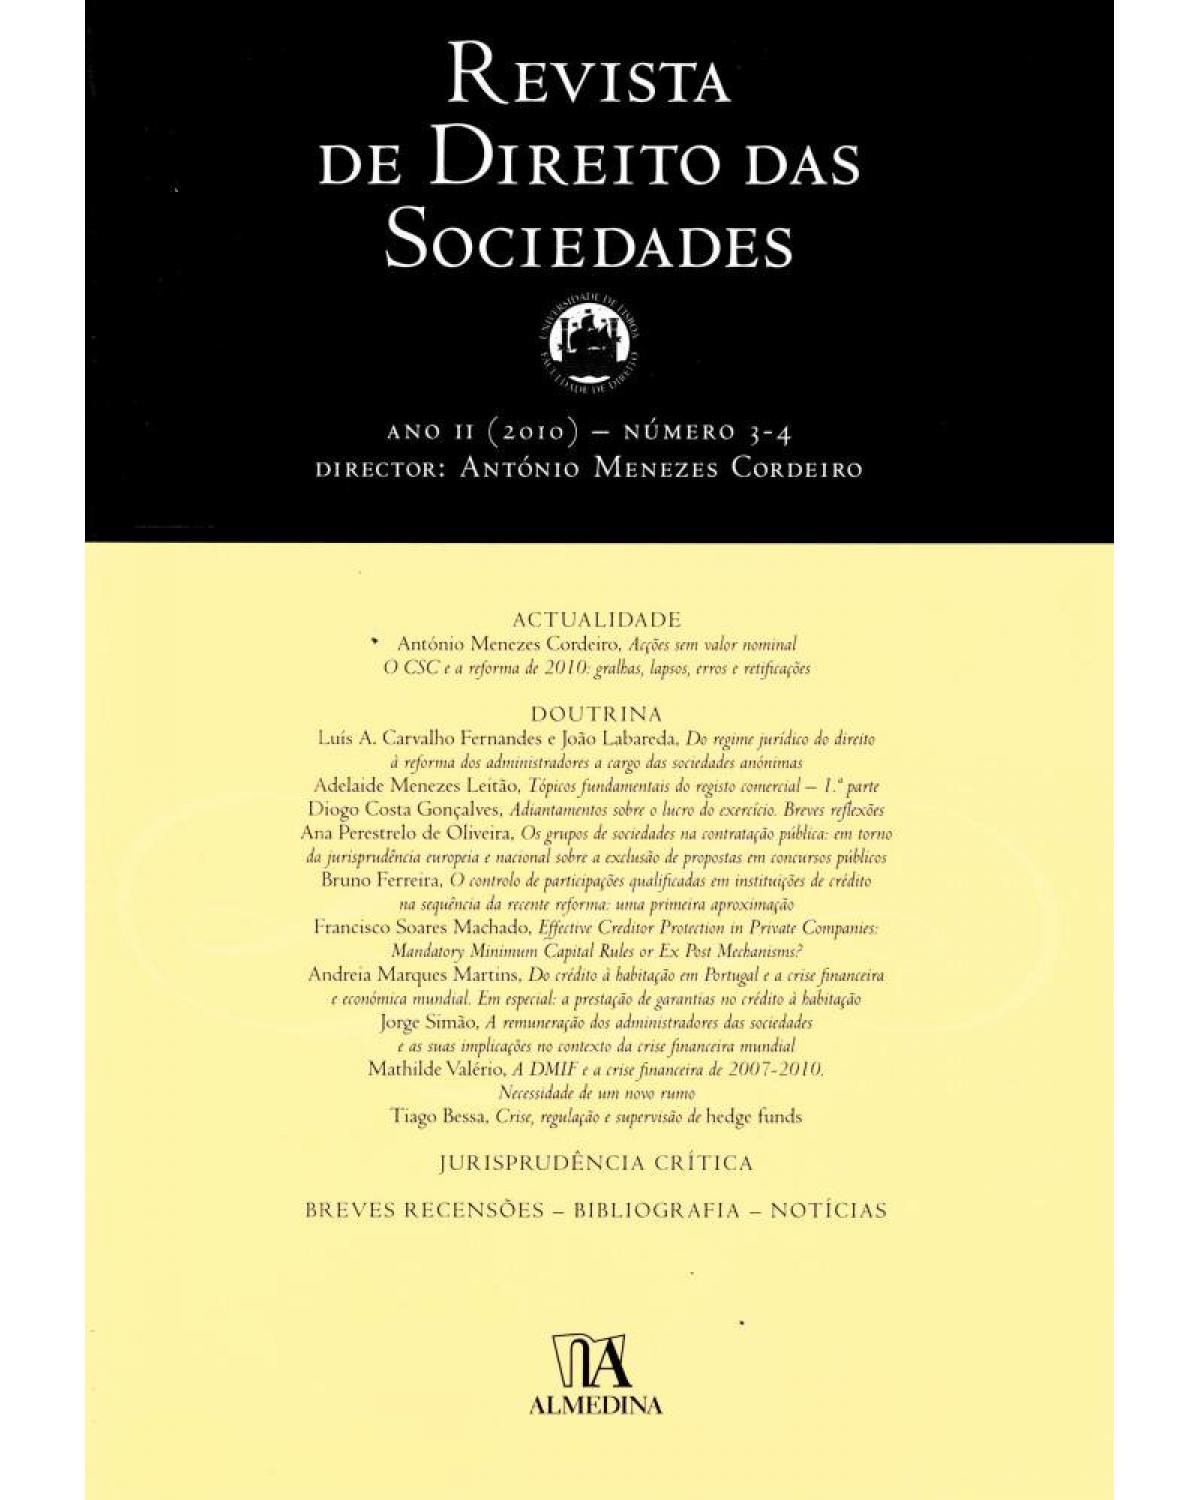 Revista de direito das sociedades - ano II - Nºs 3-4 - 1ª Edição | 2011